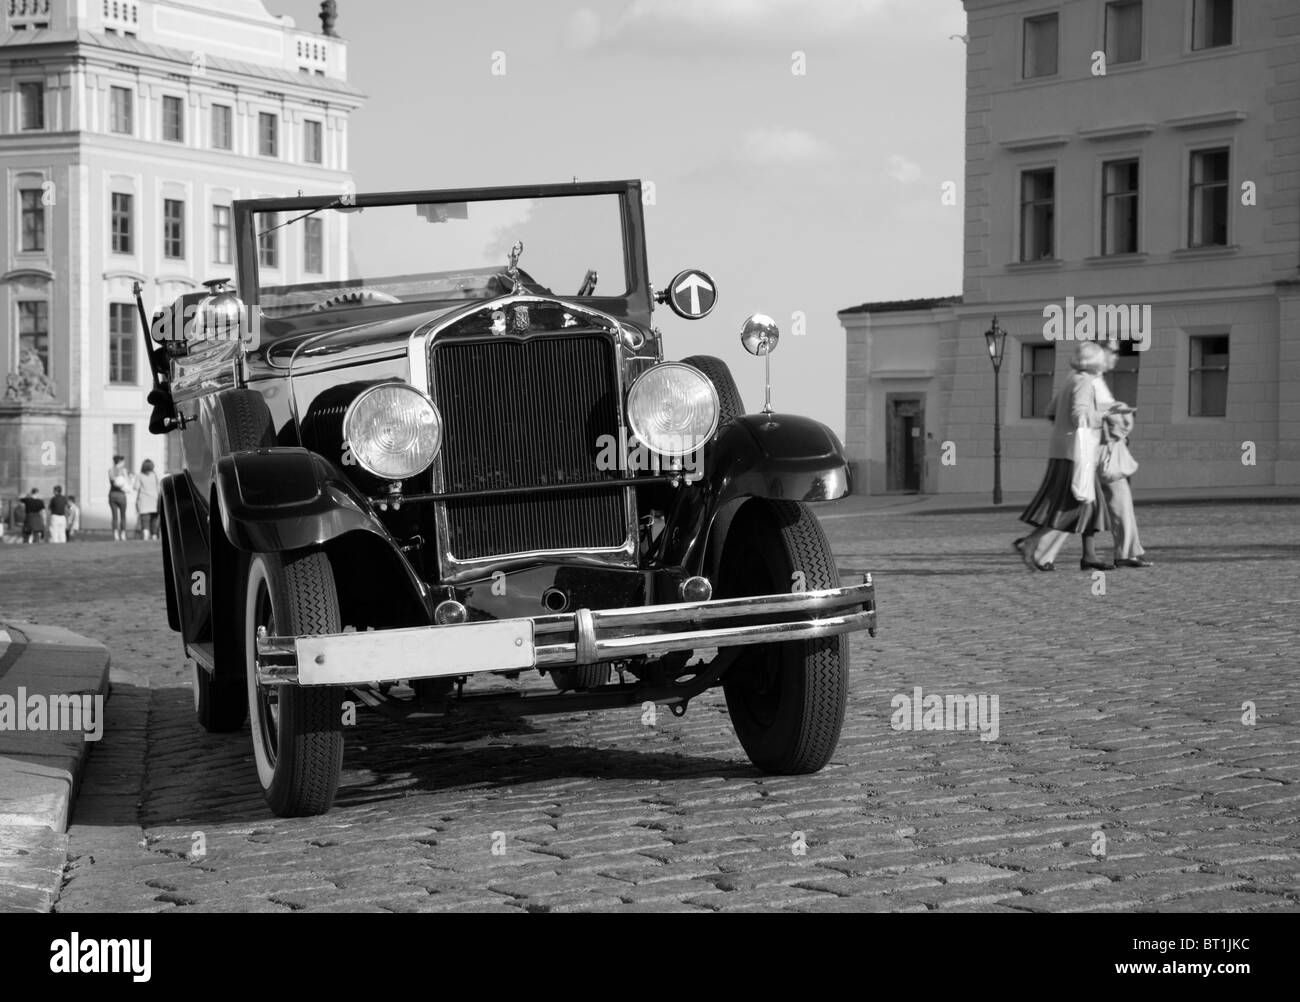 Praga - el veterano taxi Foto de stock